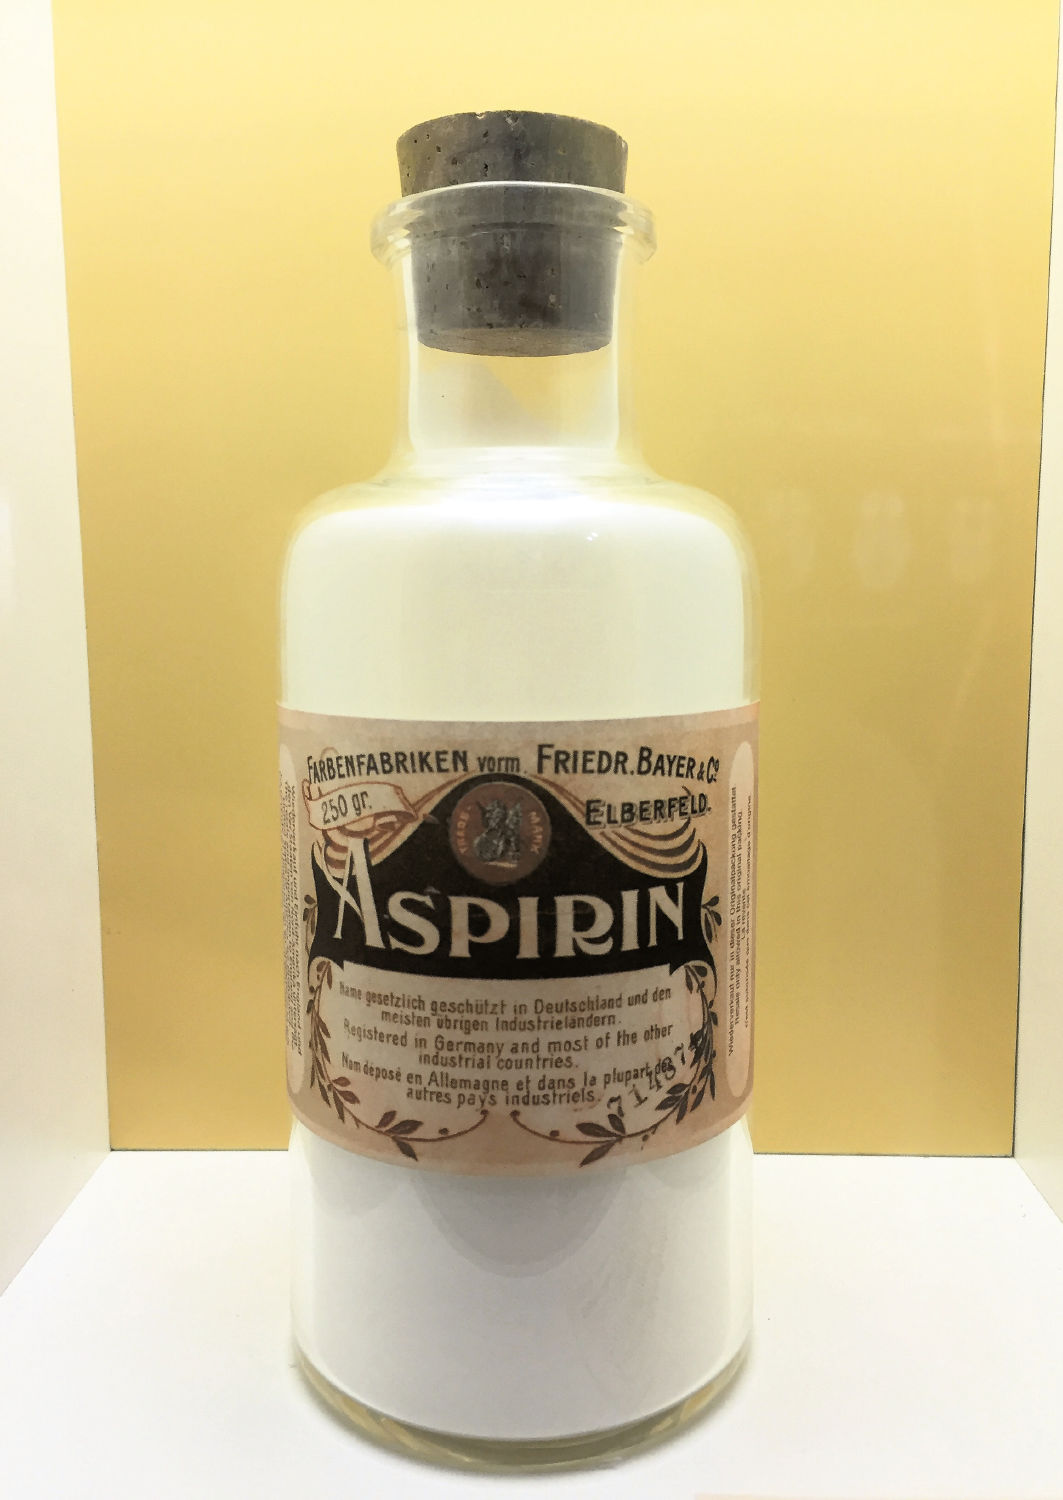 Pod obchodným názvom Aspirin bol liek 1....